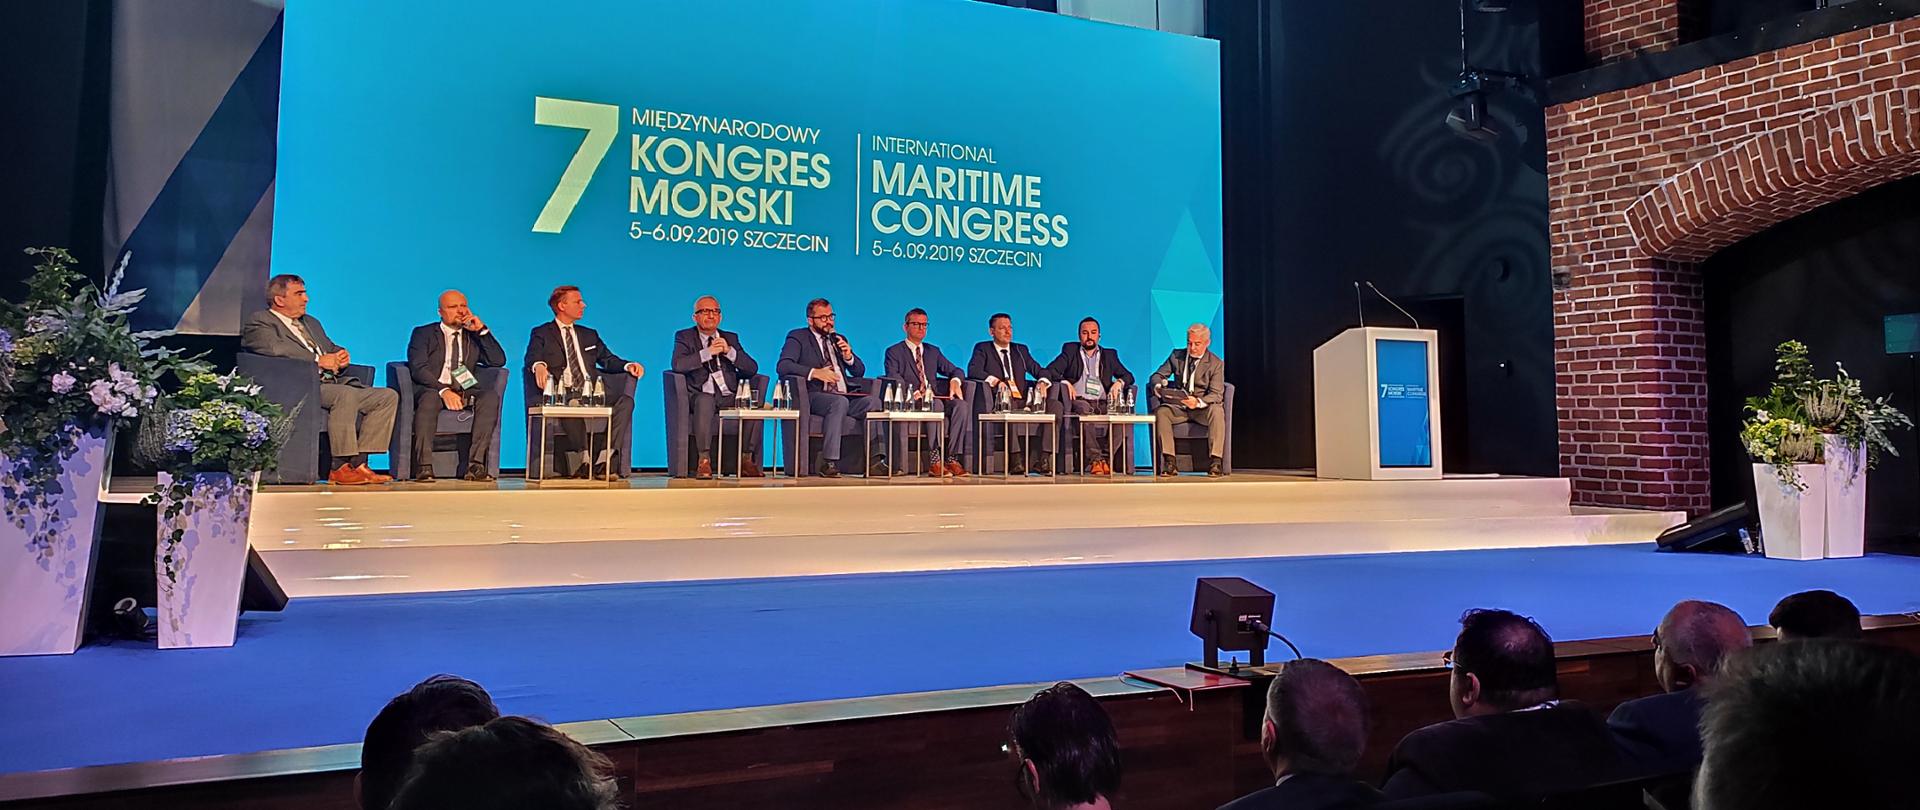 Zdjęcie z widokiem na scenę, na której siedzi dziewięciu mężczyzn, wśród nich minister Puda, który w ręku trzyma mikrofon. Za nimi wyświetlany jest napis 7 Międzynarodowy Kongres Morski w Szczecinie, 5-6.09.2019 Szczecin